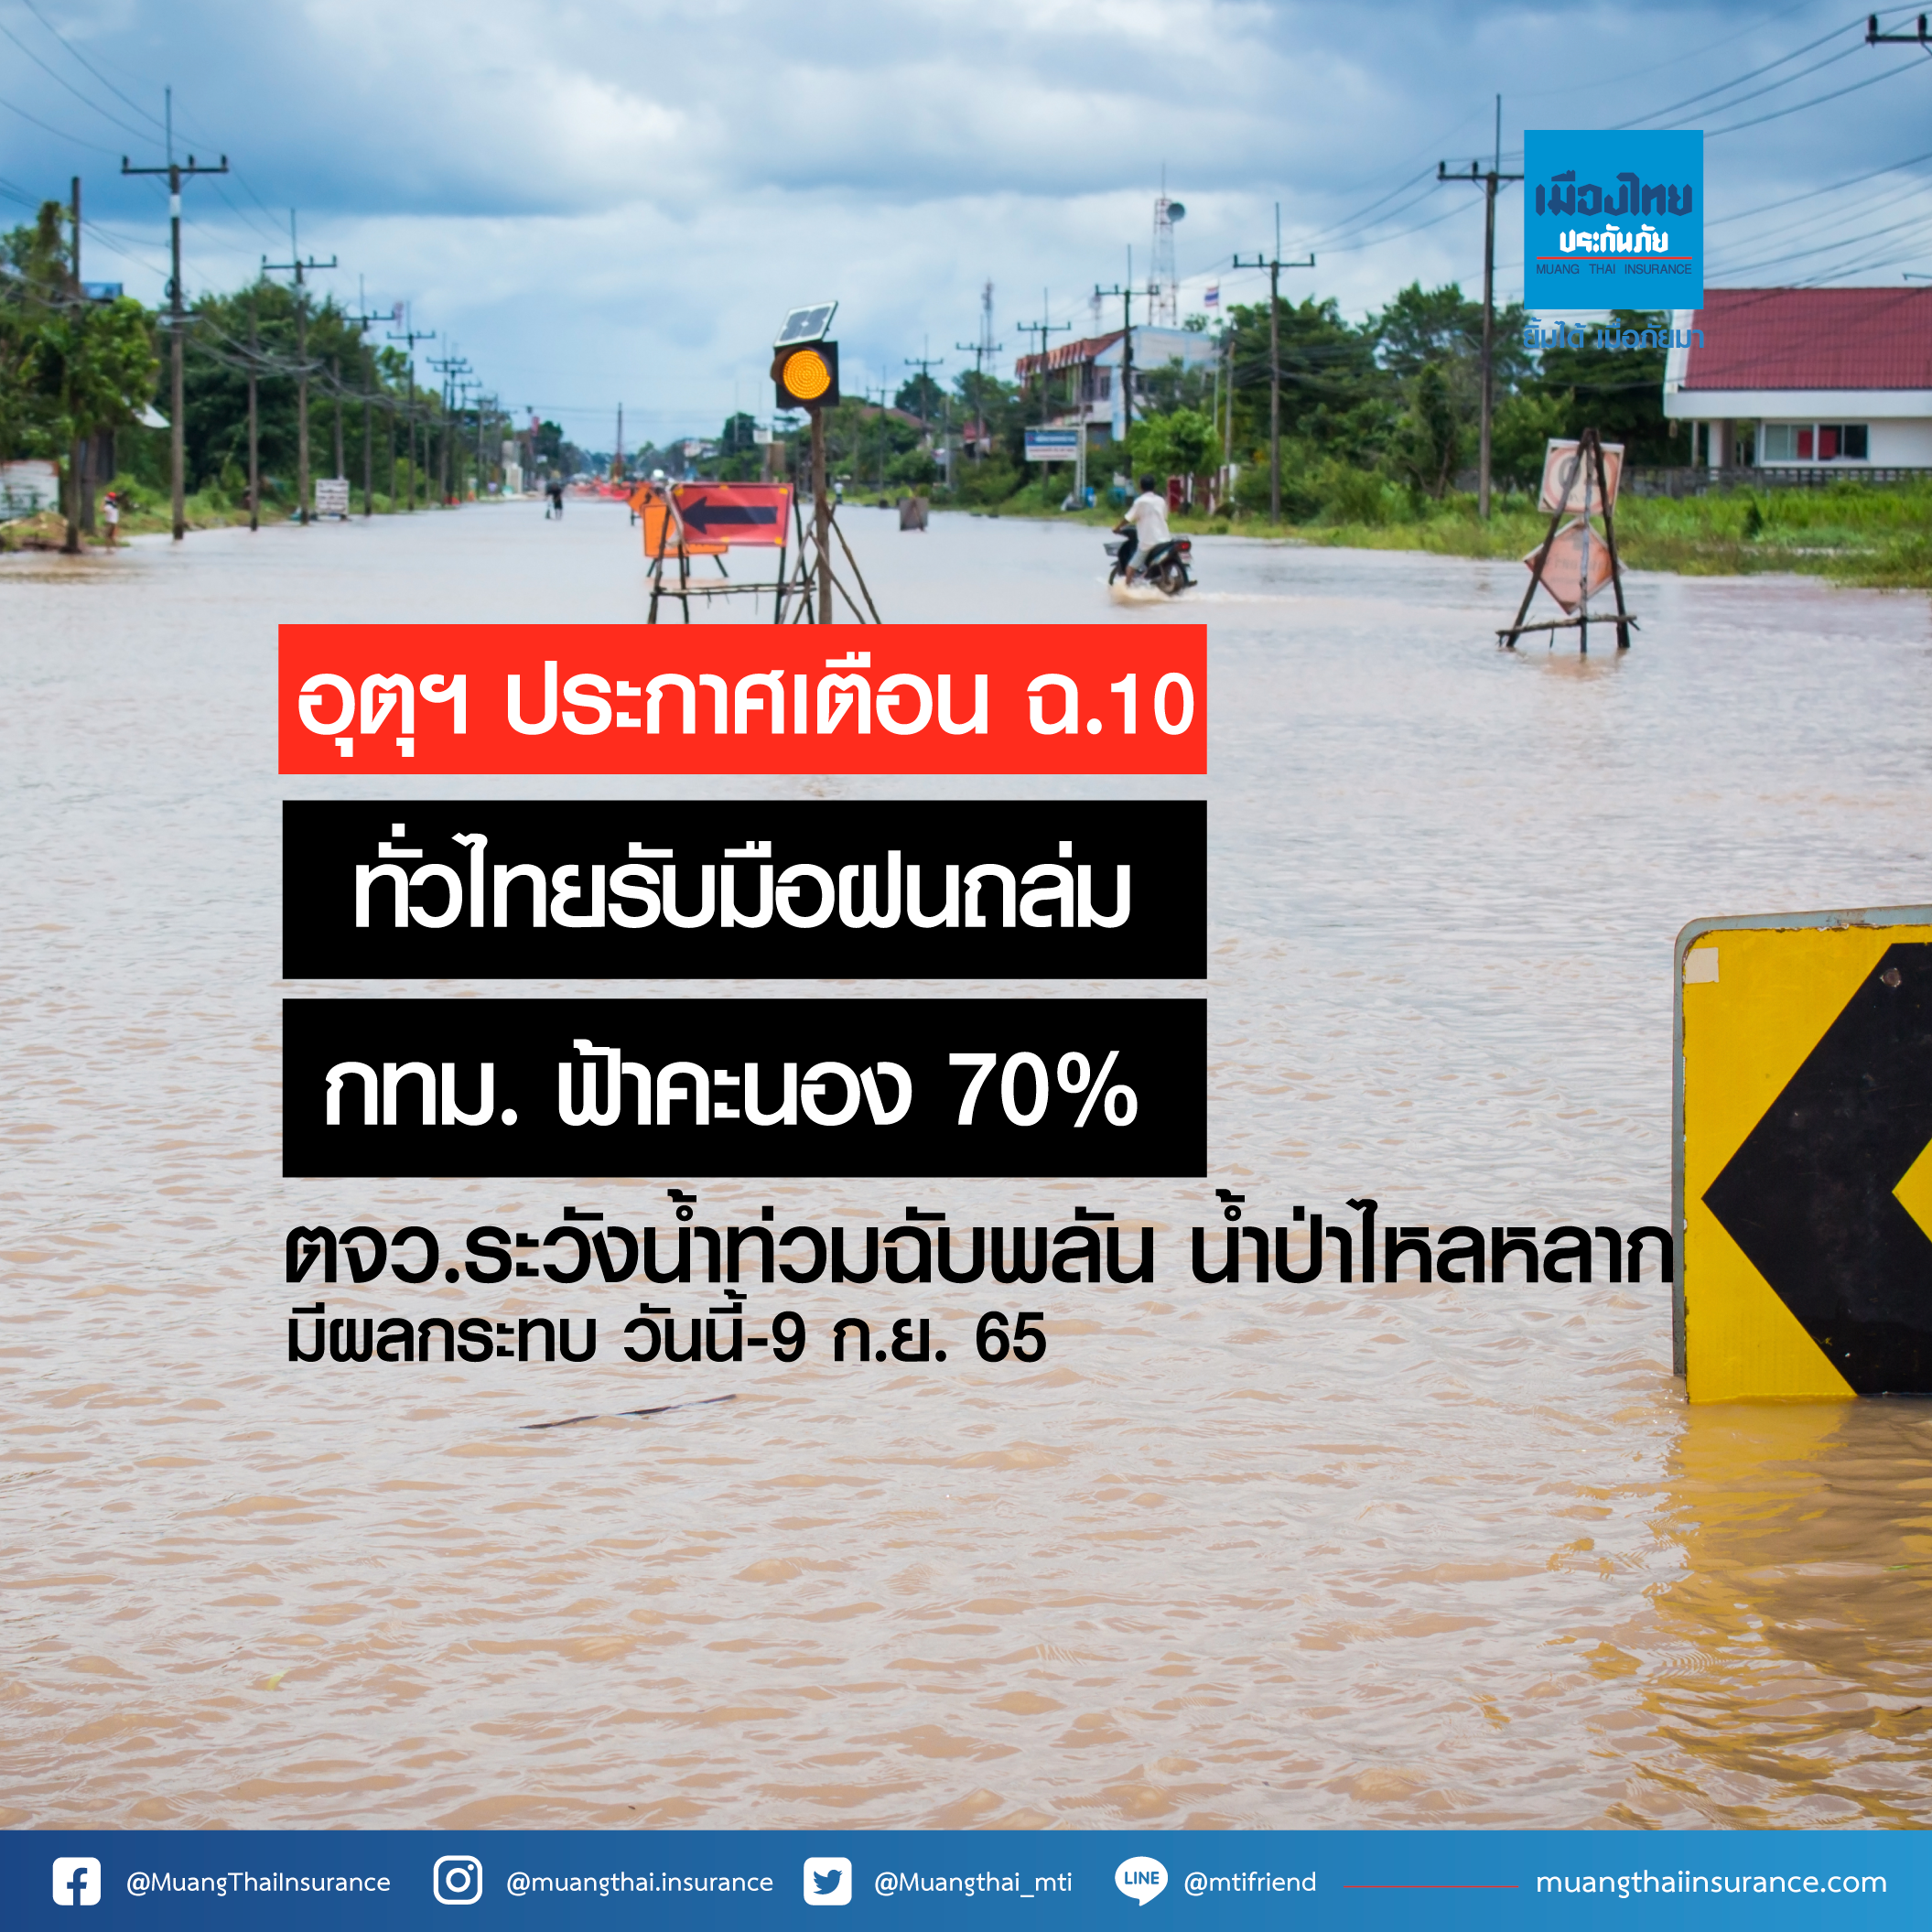 อุตุฯ ประกาศเตือน ฉ.10 ทั่วไทยรับมือฝนถล่ม กทม.ฟ้าคะนอง 70% ตจว.ระวังน้ำท่วมฉับพลัน น้ำป่าไหลหลาก (มีผลกระทบวันนี้-9 ก.ย.65)